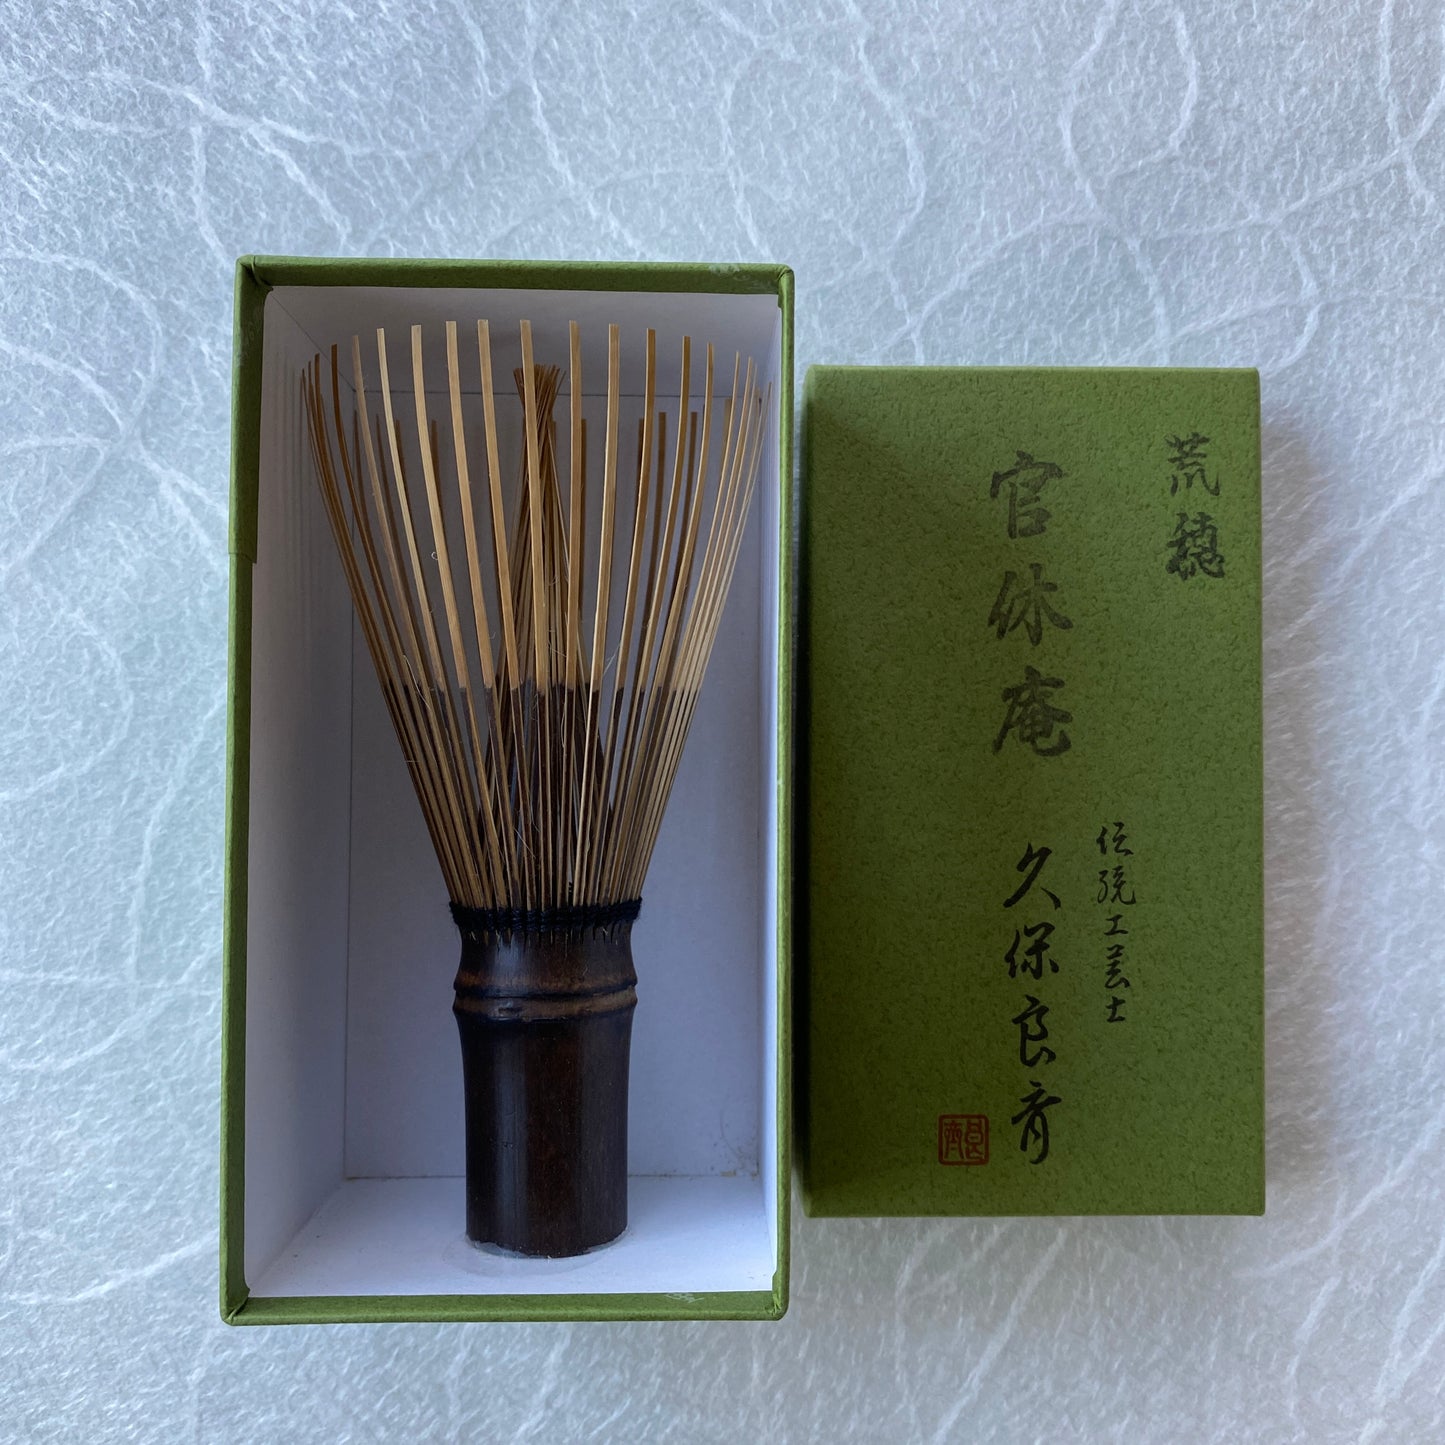 Black Bamboo Whisk, Kurotake Takayama Chasen for Mushanokoji Style l 黒竹 高山茶筅 武者小路 官休庵